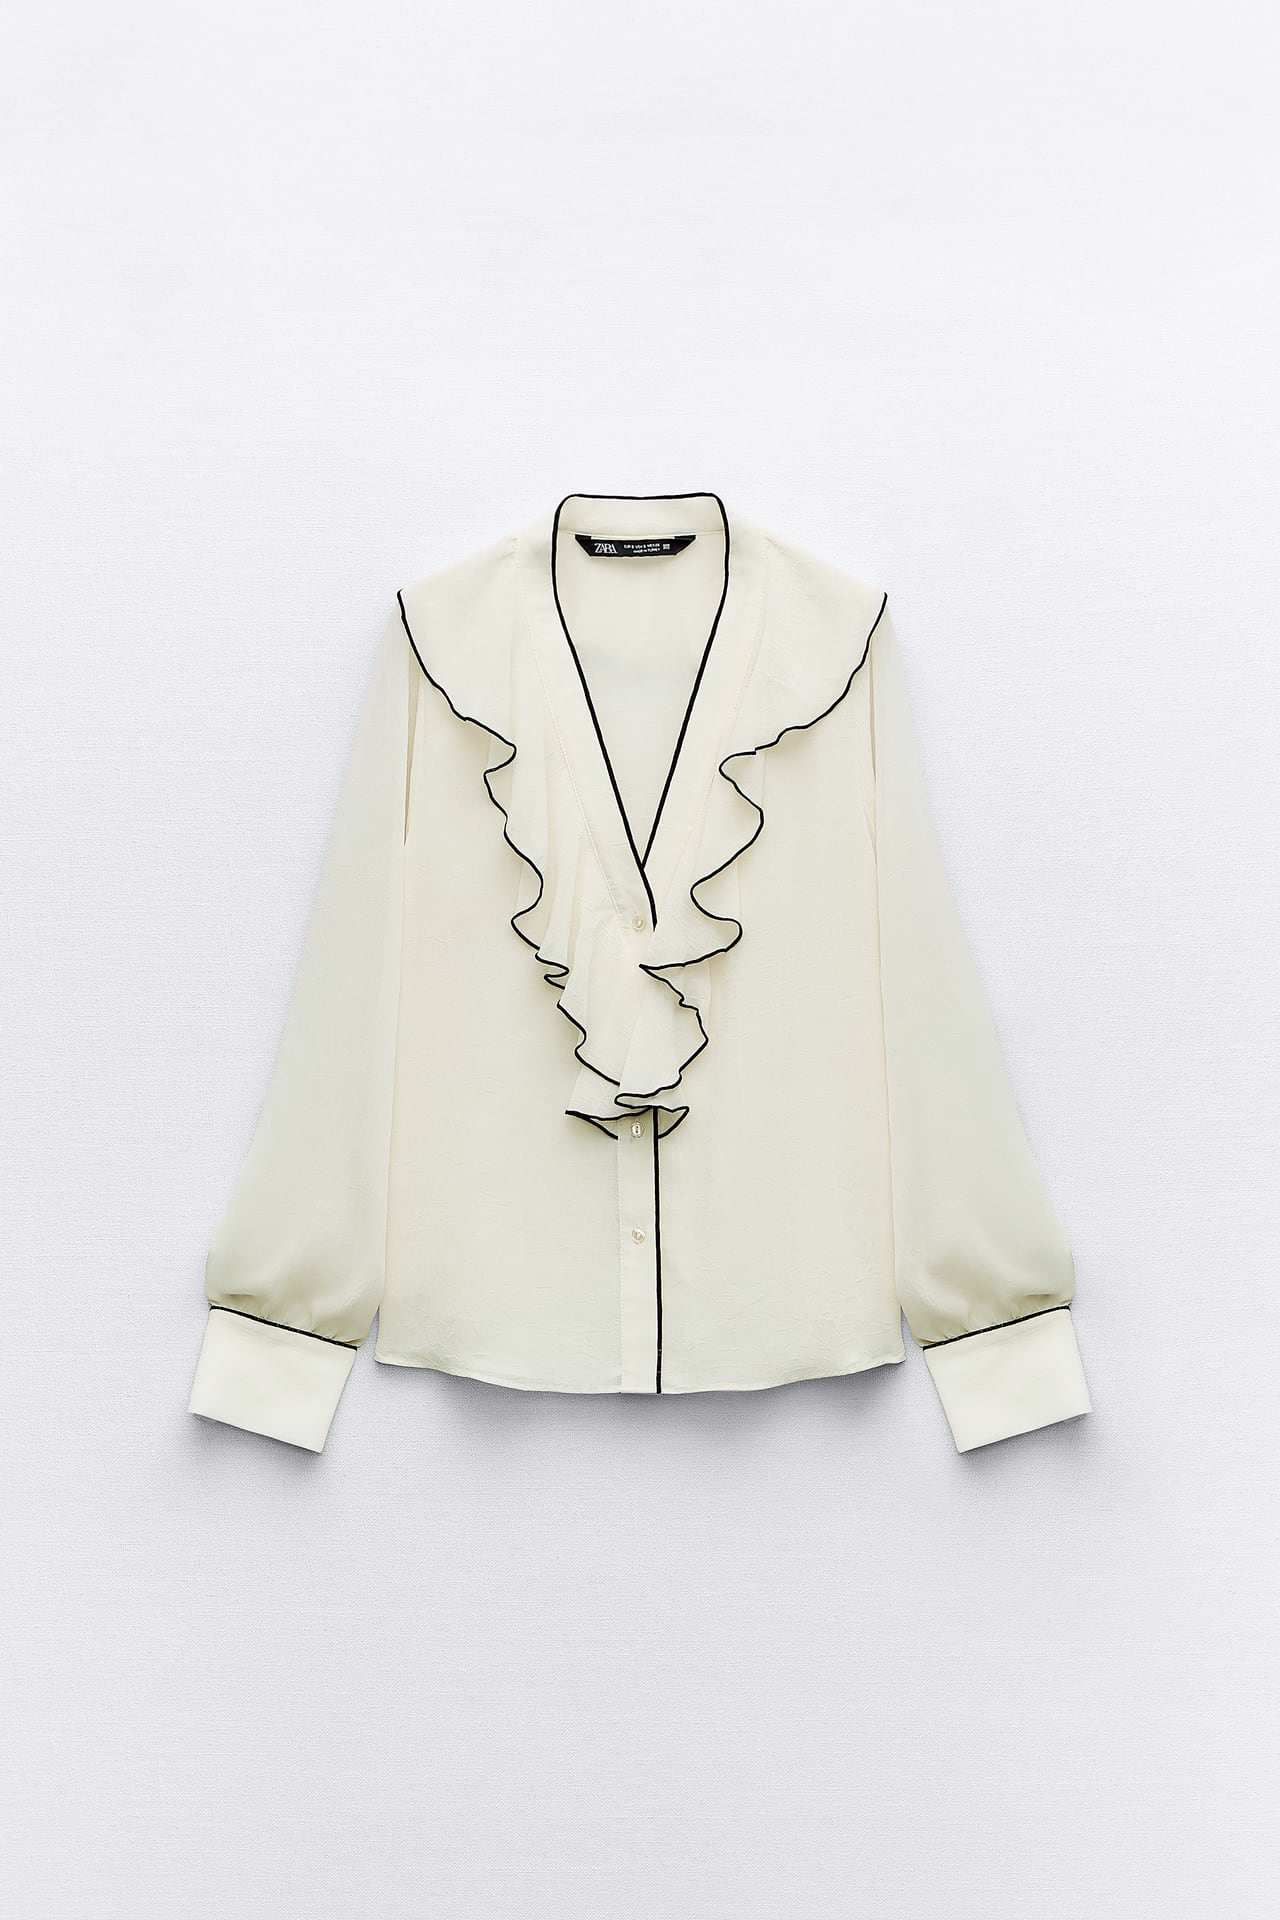 La blusa romántica de Zara ideal para llevar el estilo 'coquette'.